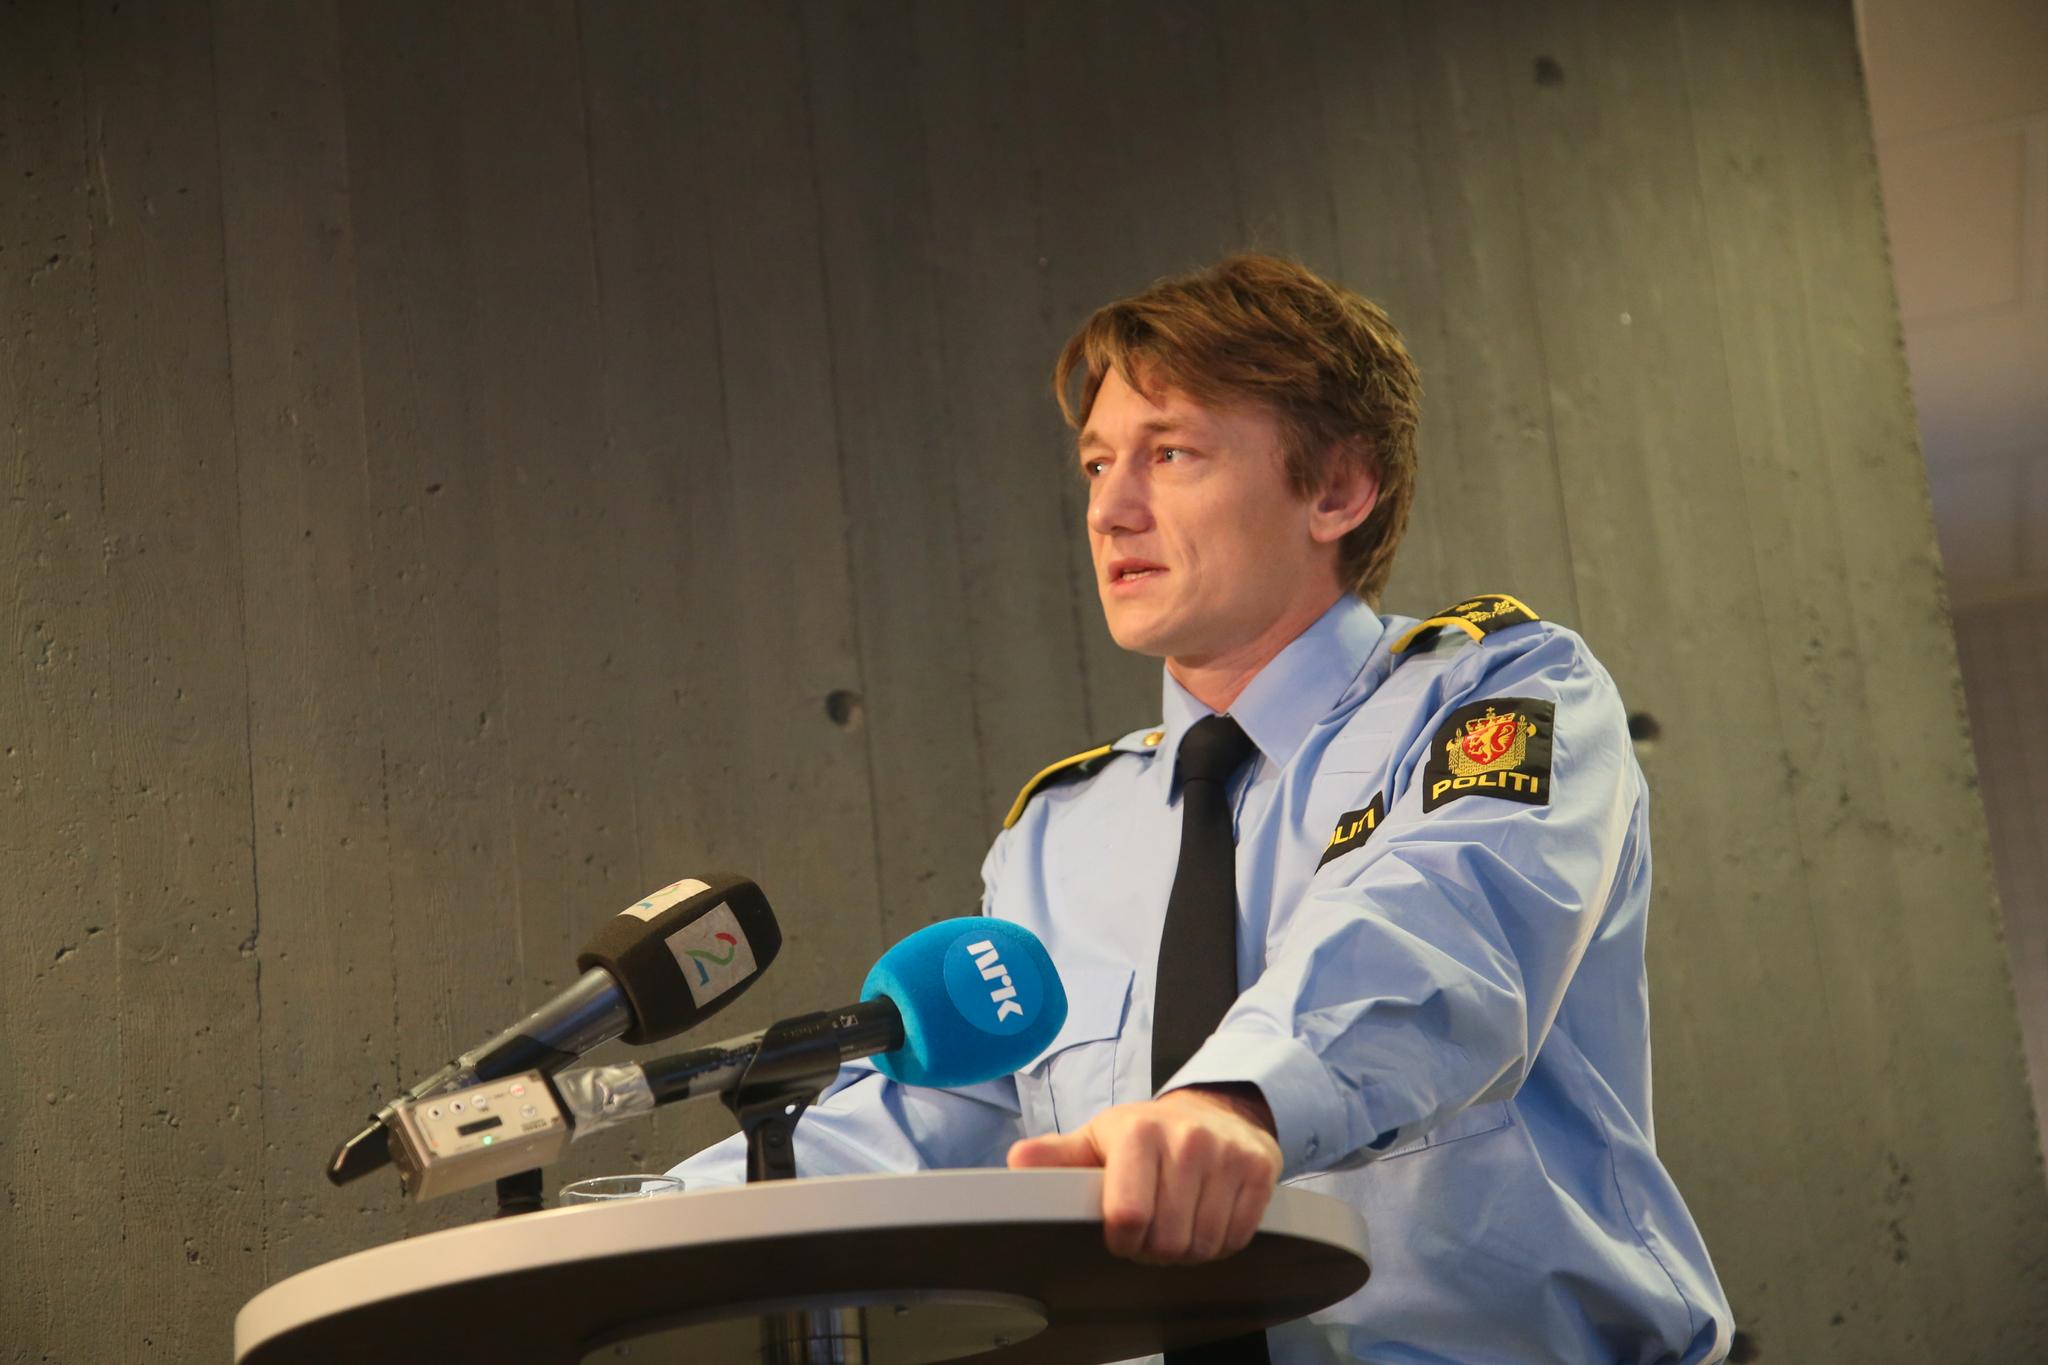  Politiadvokat André Lillehovde van der Eynden under fredagens pressekonferanse på politihuset i Hamar.